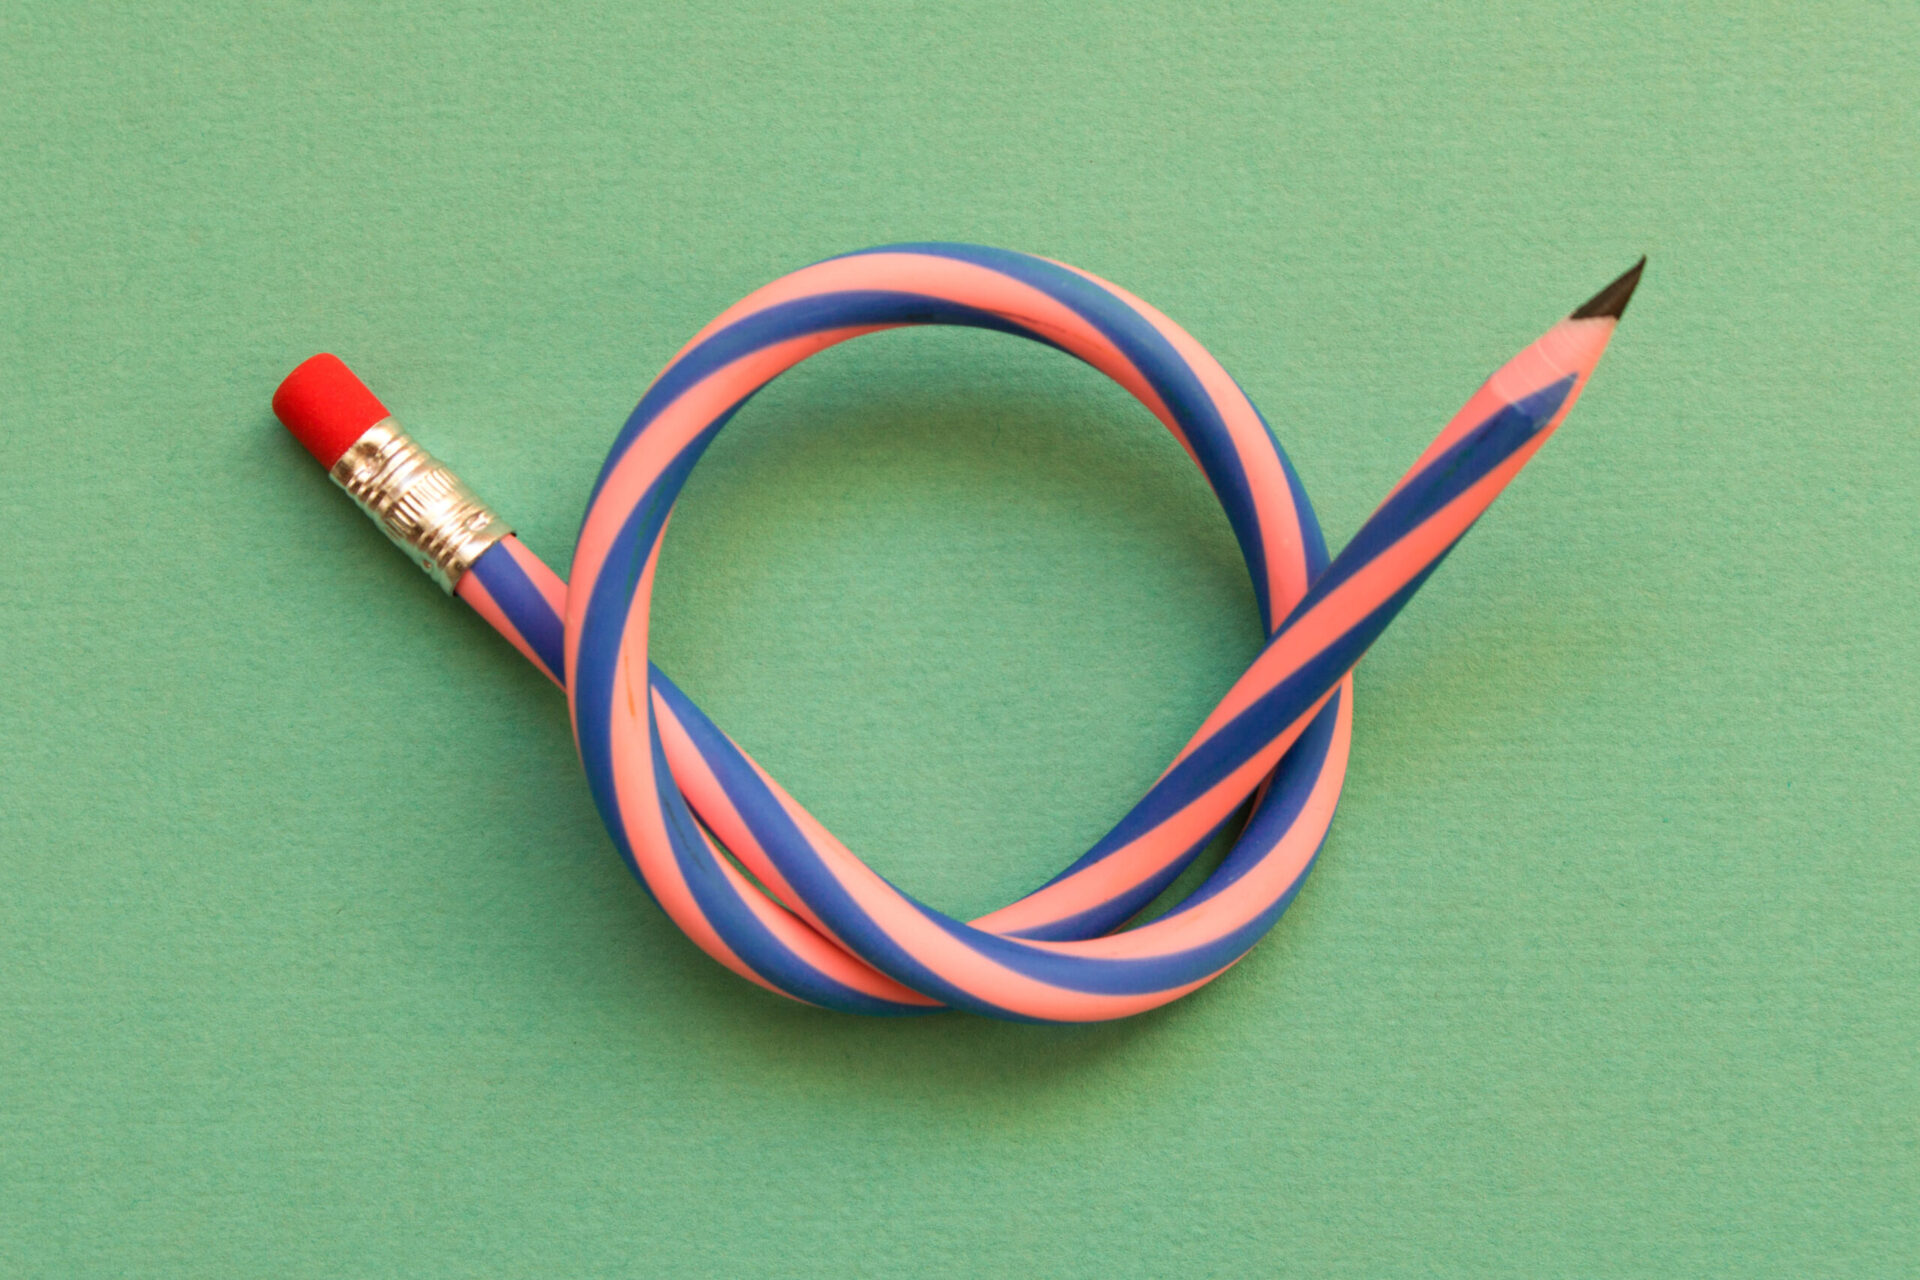 Photo of a flexible rubber pencil